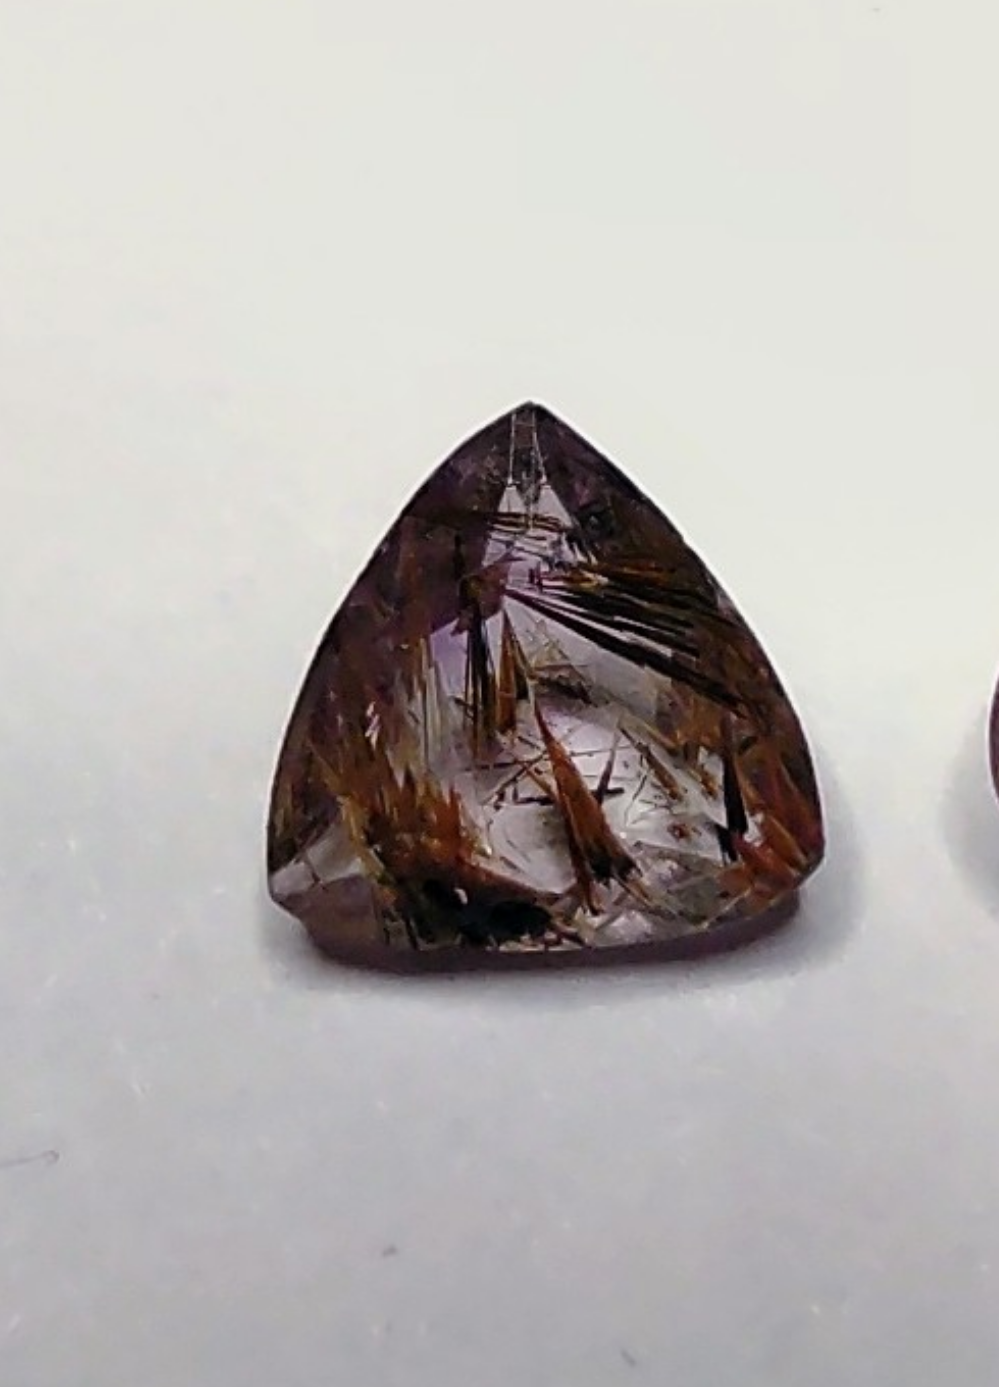 A trillion cut super seven quartz gem.